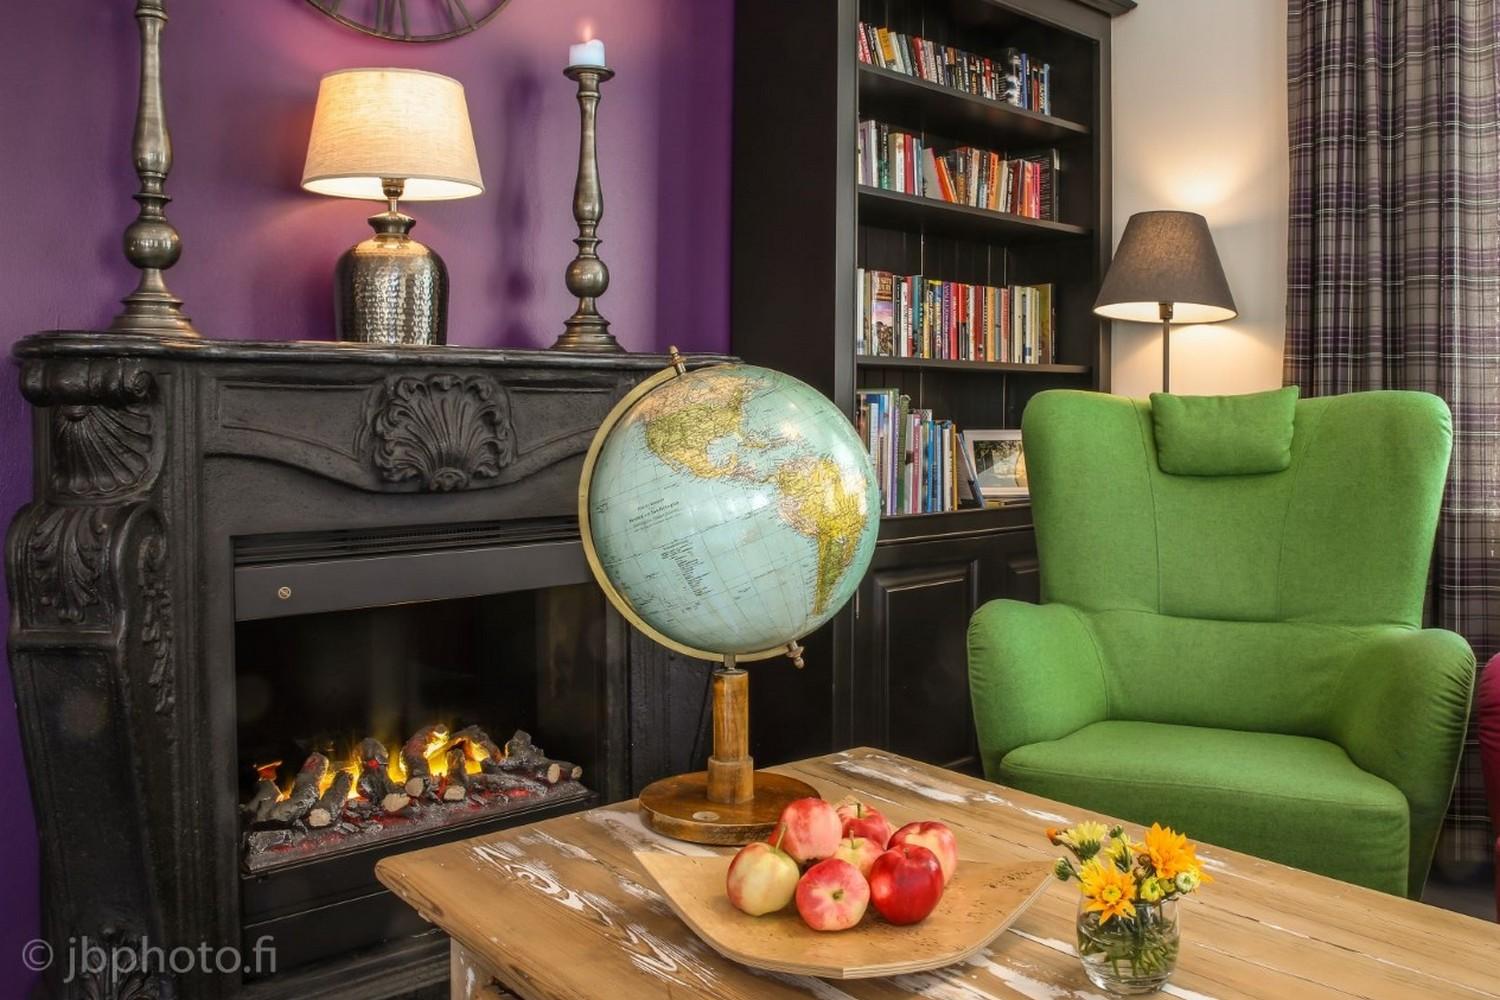 Kuva Hiljahelenan oleskelutilasta. Etualalla pöytä, jolla karttapallo, omenavati ja kukkamaljakko, taustalla kirjahylly, takka, lamppuja ja nojatuoli.